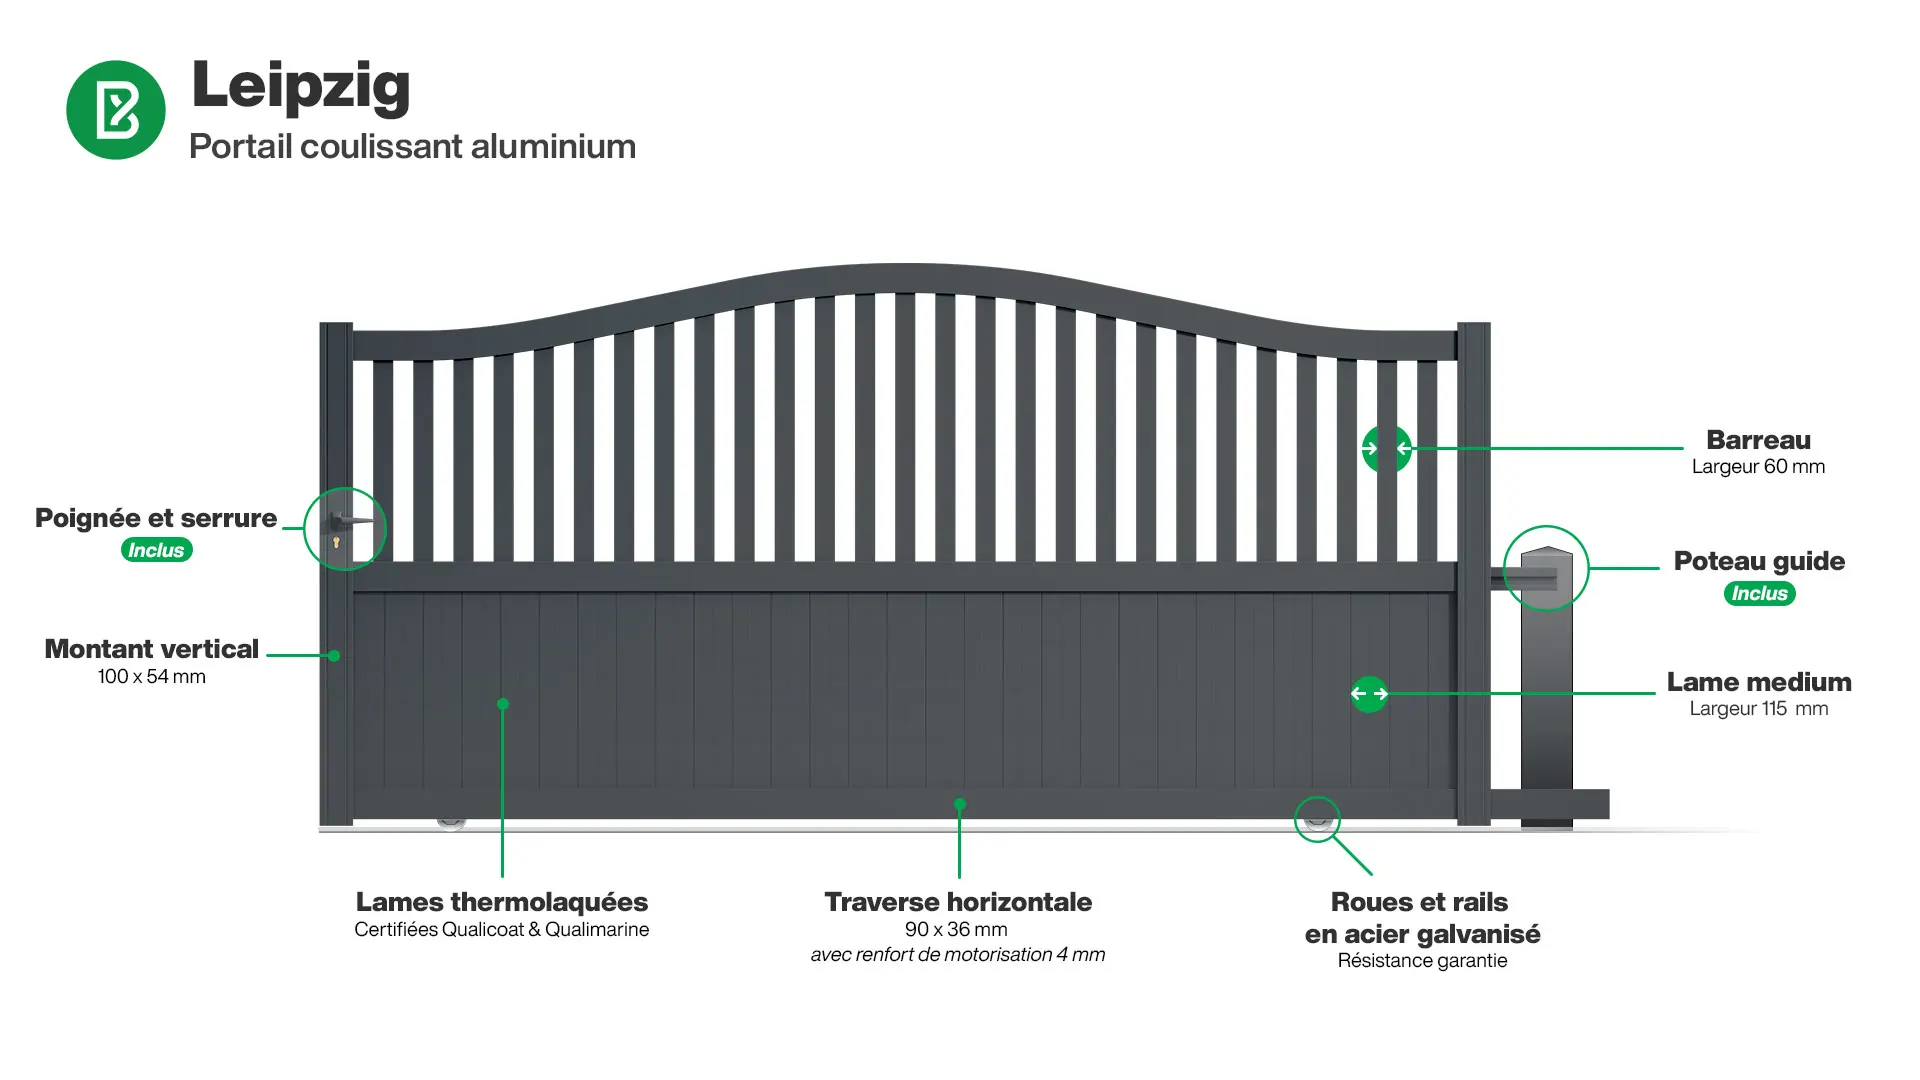 Portail : Infographie d'un portail coulissant aluminium modèle LEIPZIG